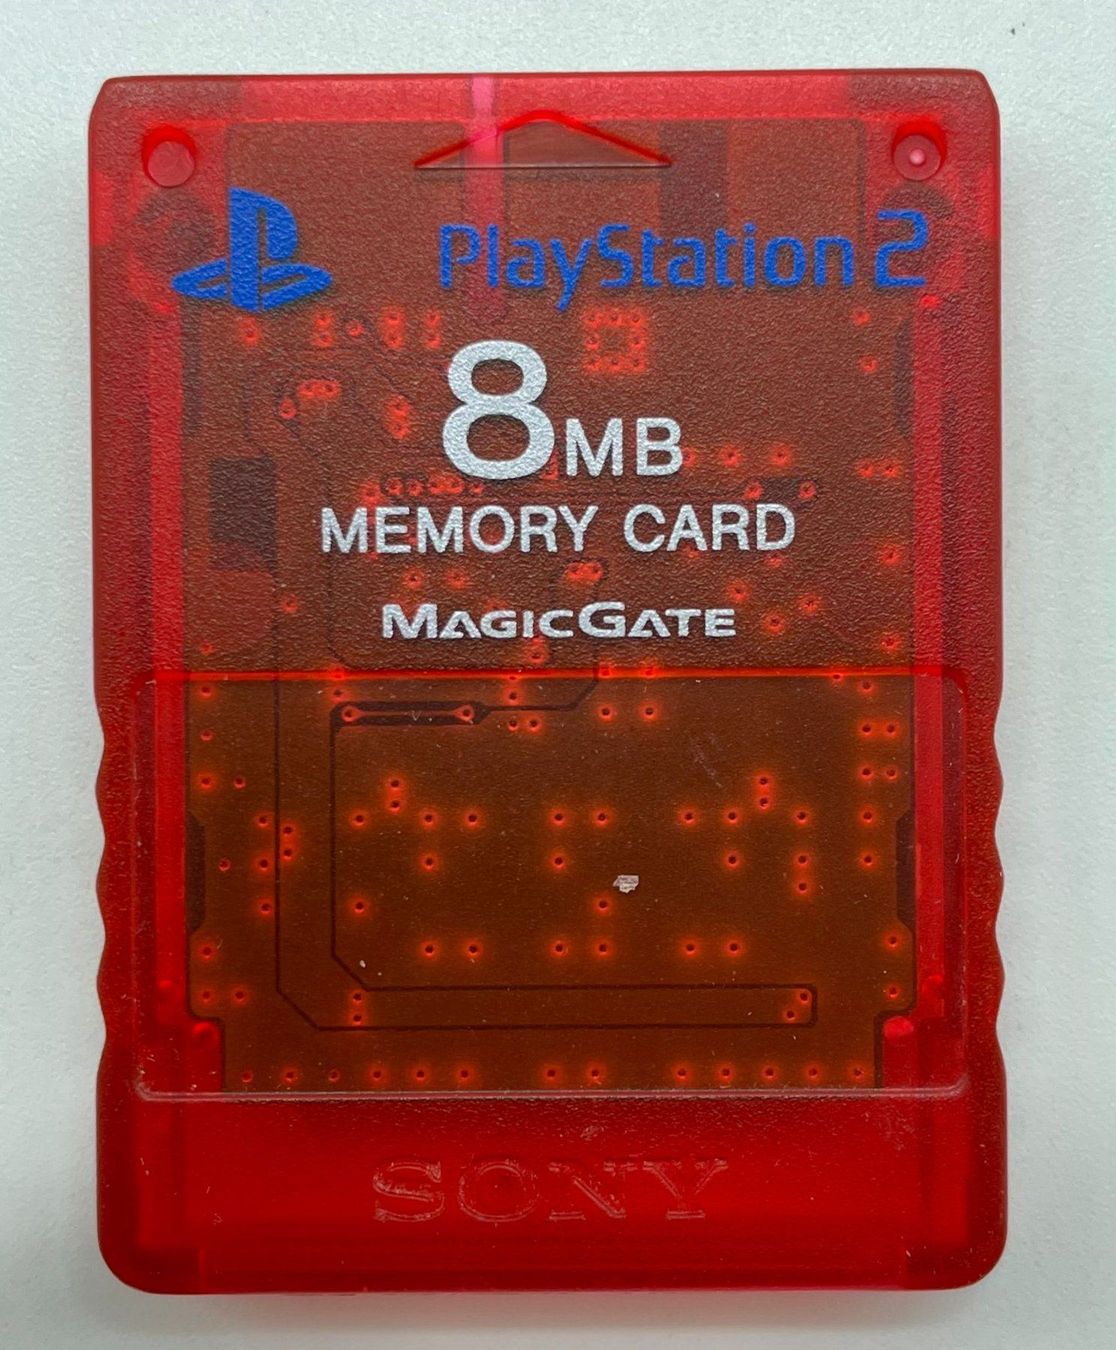 Playstation 2 - Memory Card 8MB rot